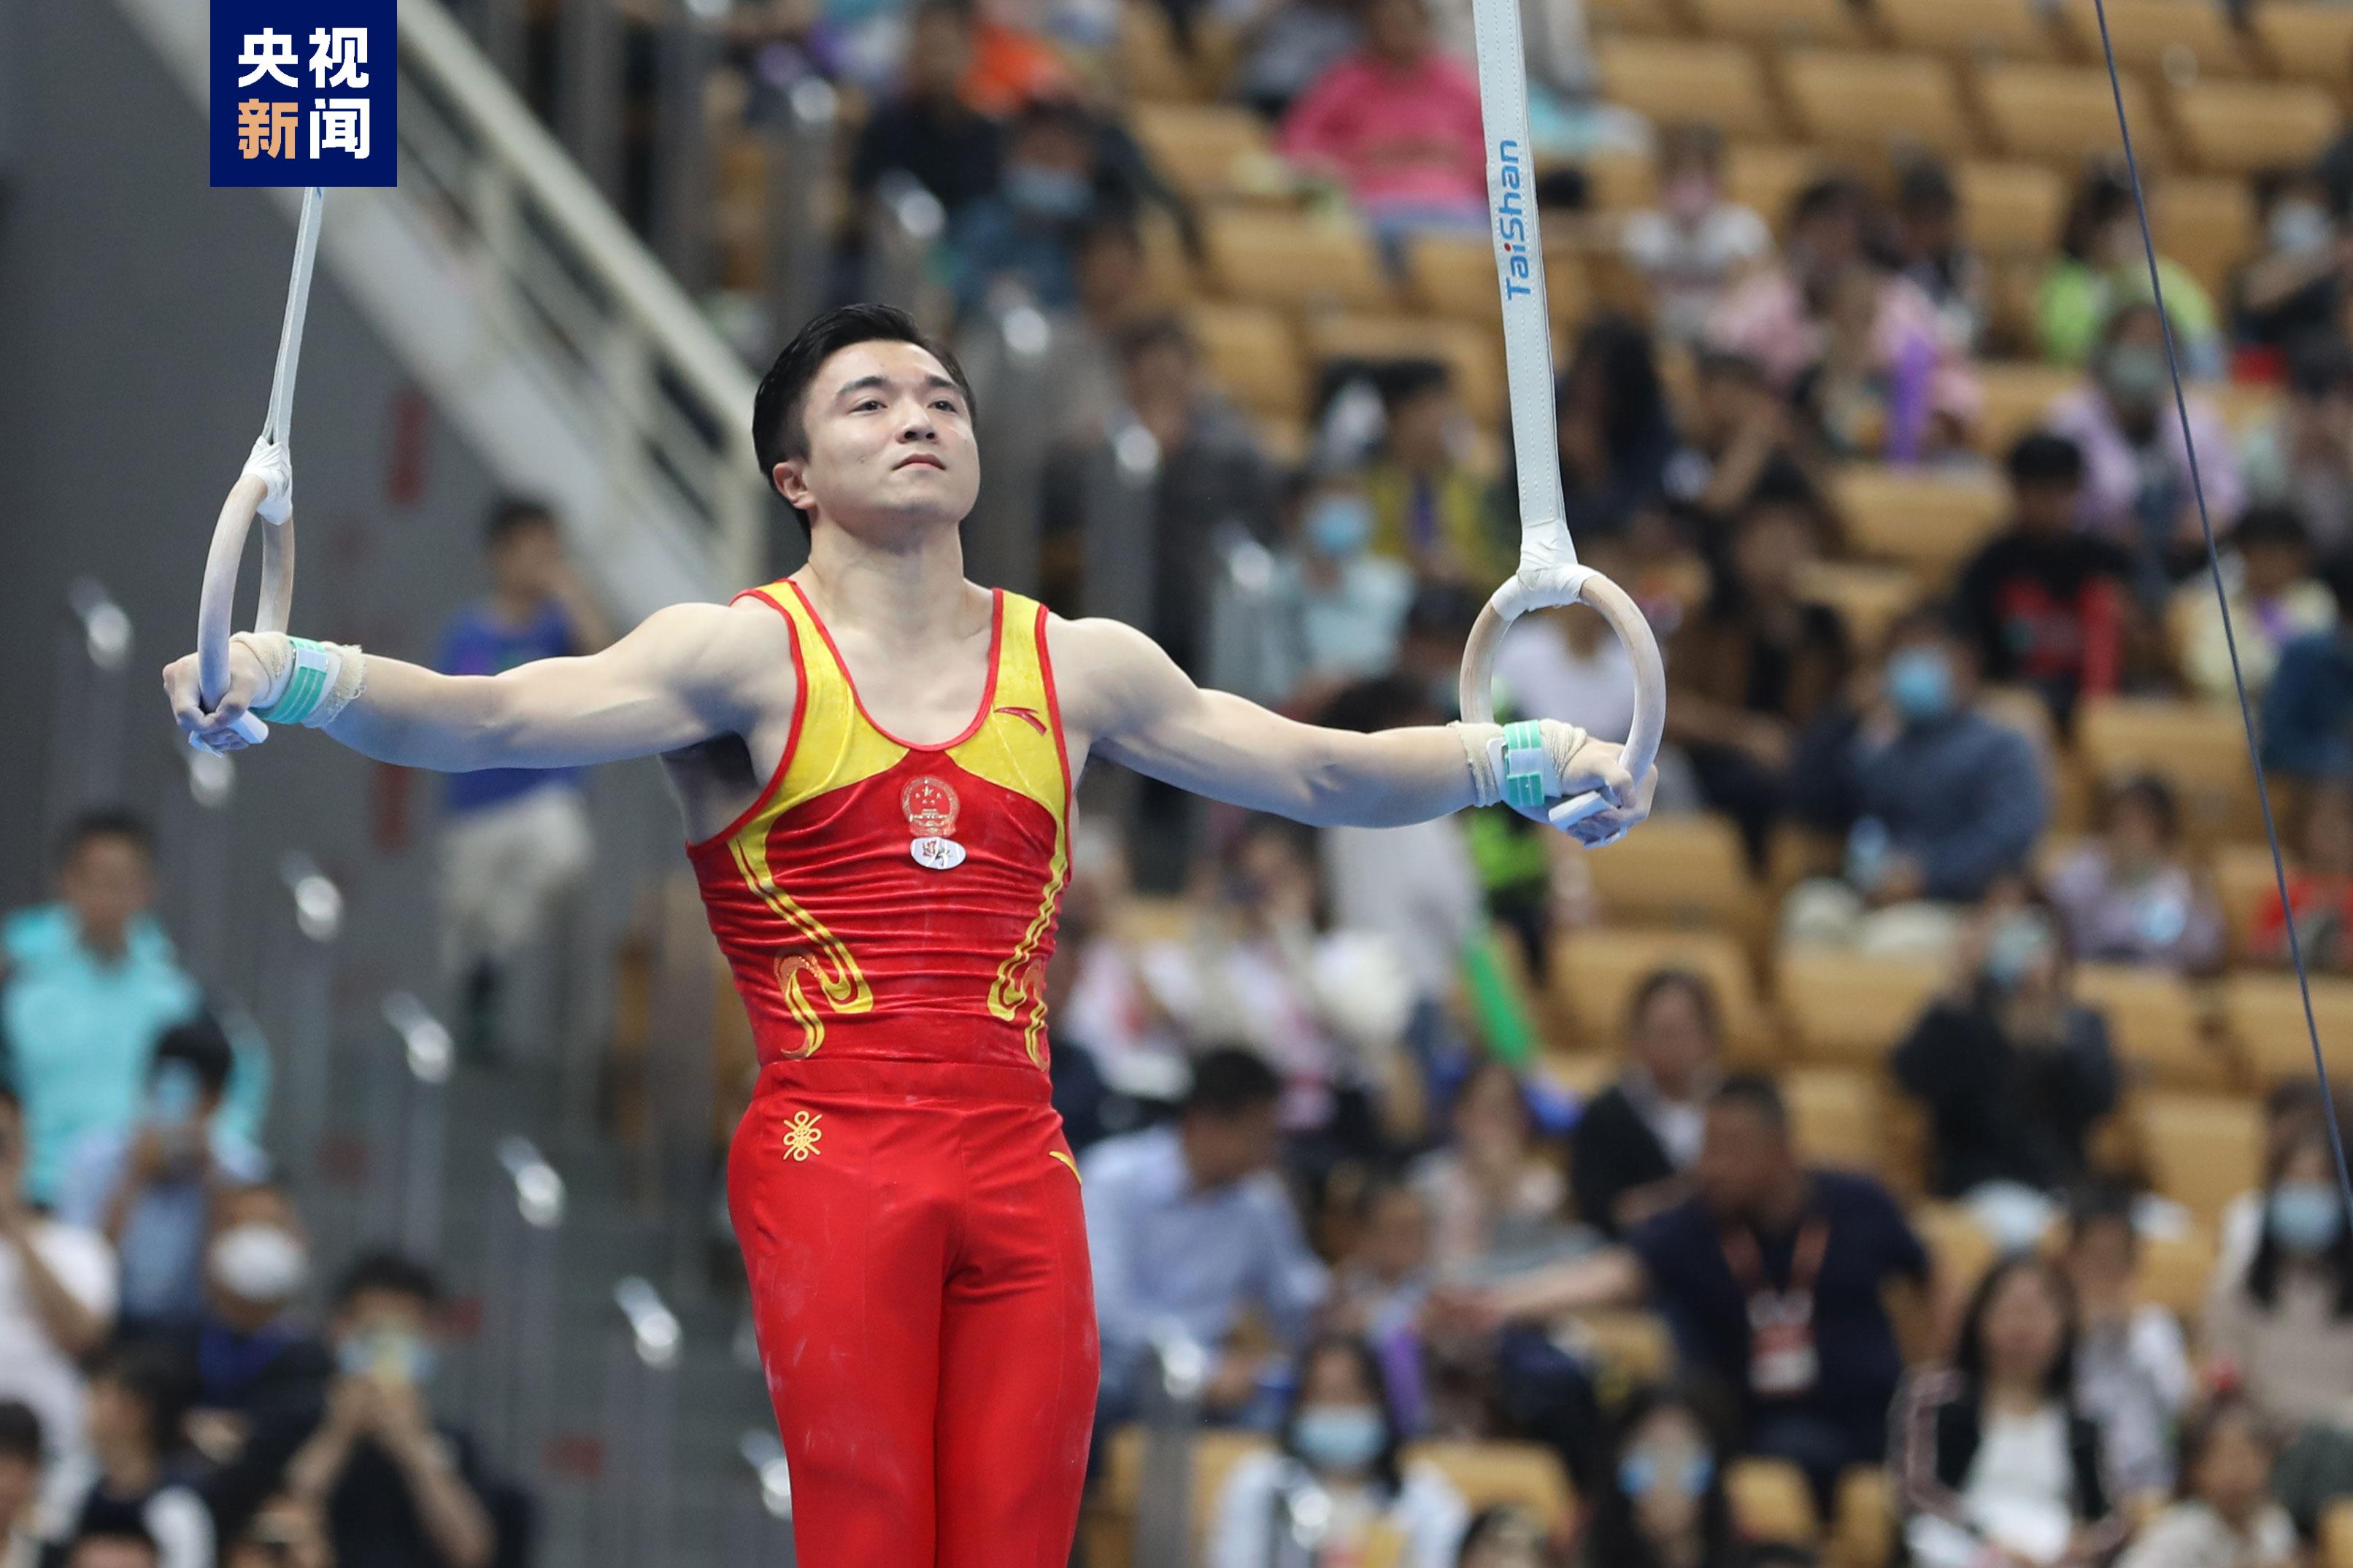 全国体操锦标赛 奥运冠军刘洋吊环摘金 邱祺缘夺个人项目第二冠